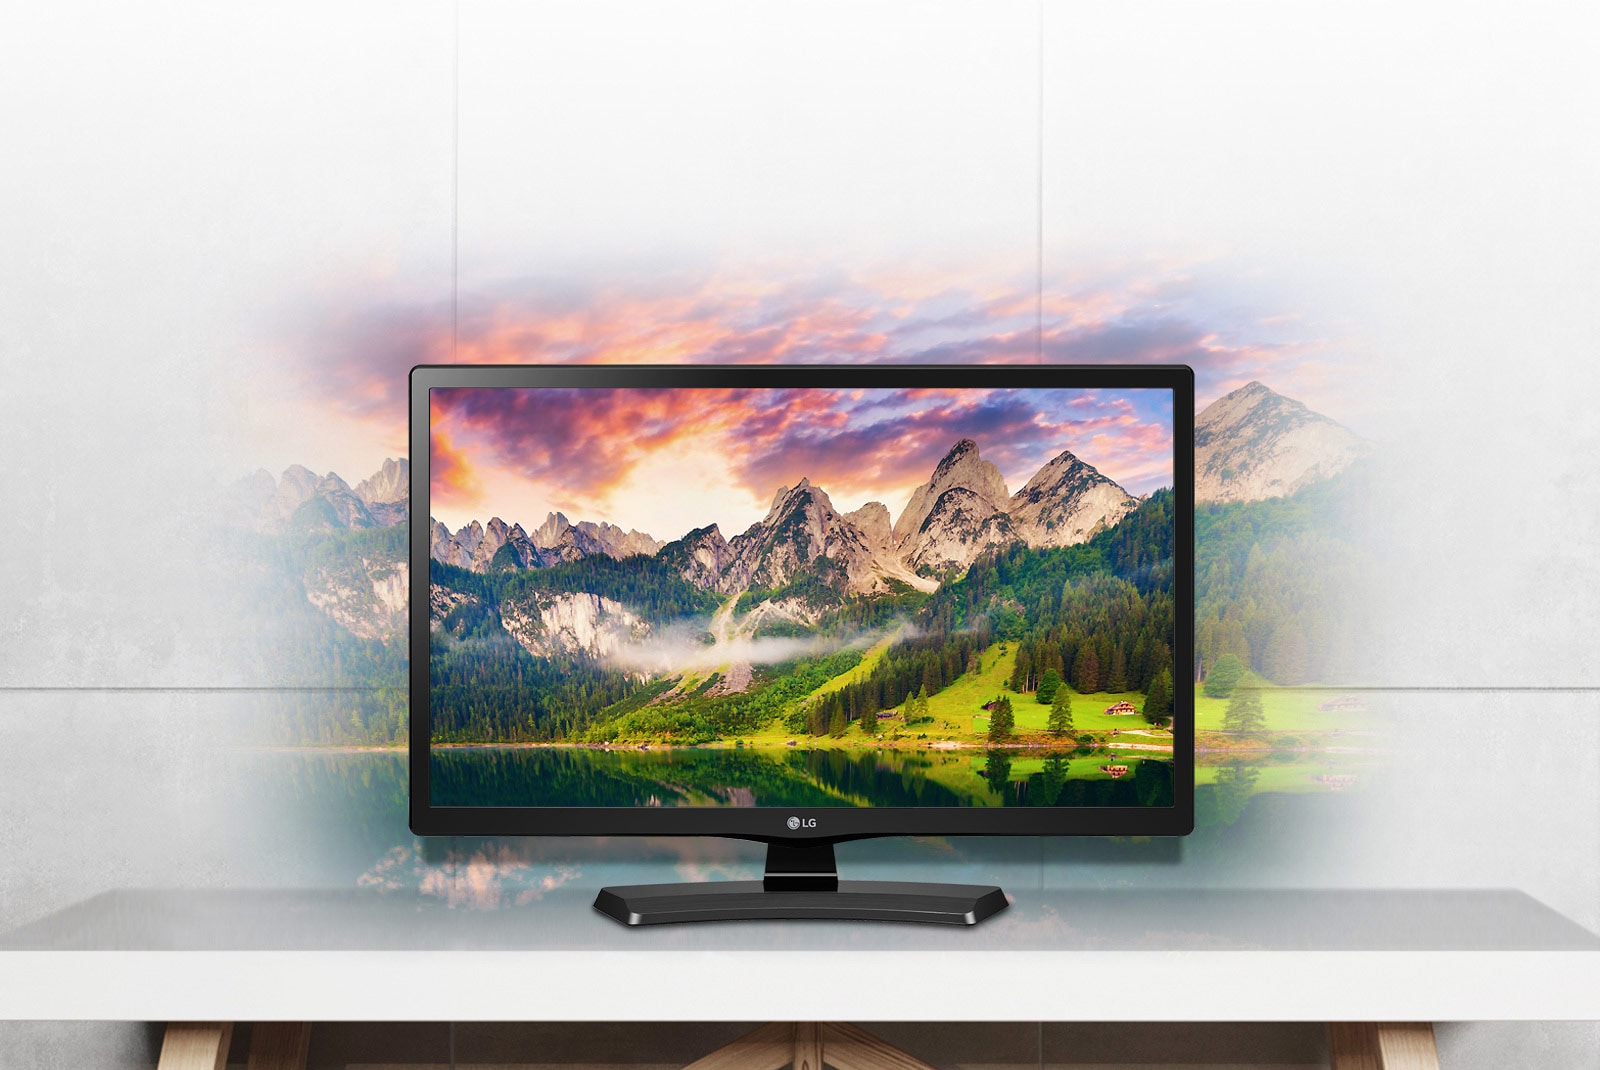 Купить телевизор лучшего качества. Телевизор LG 24 дюйма. Телевизор LG 24mt58vf. 24lj480u-PZ * LG телевизор. Телевизор LG 24tn520s.